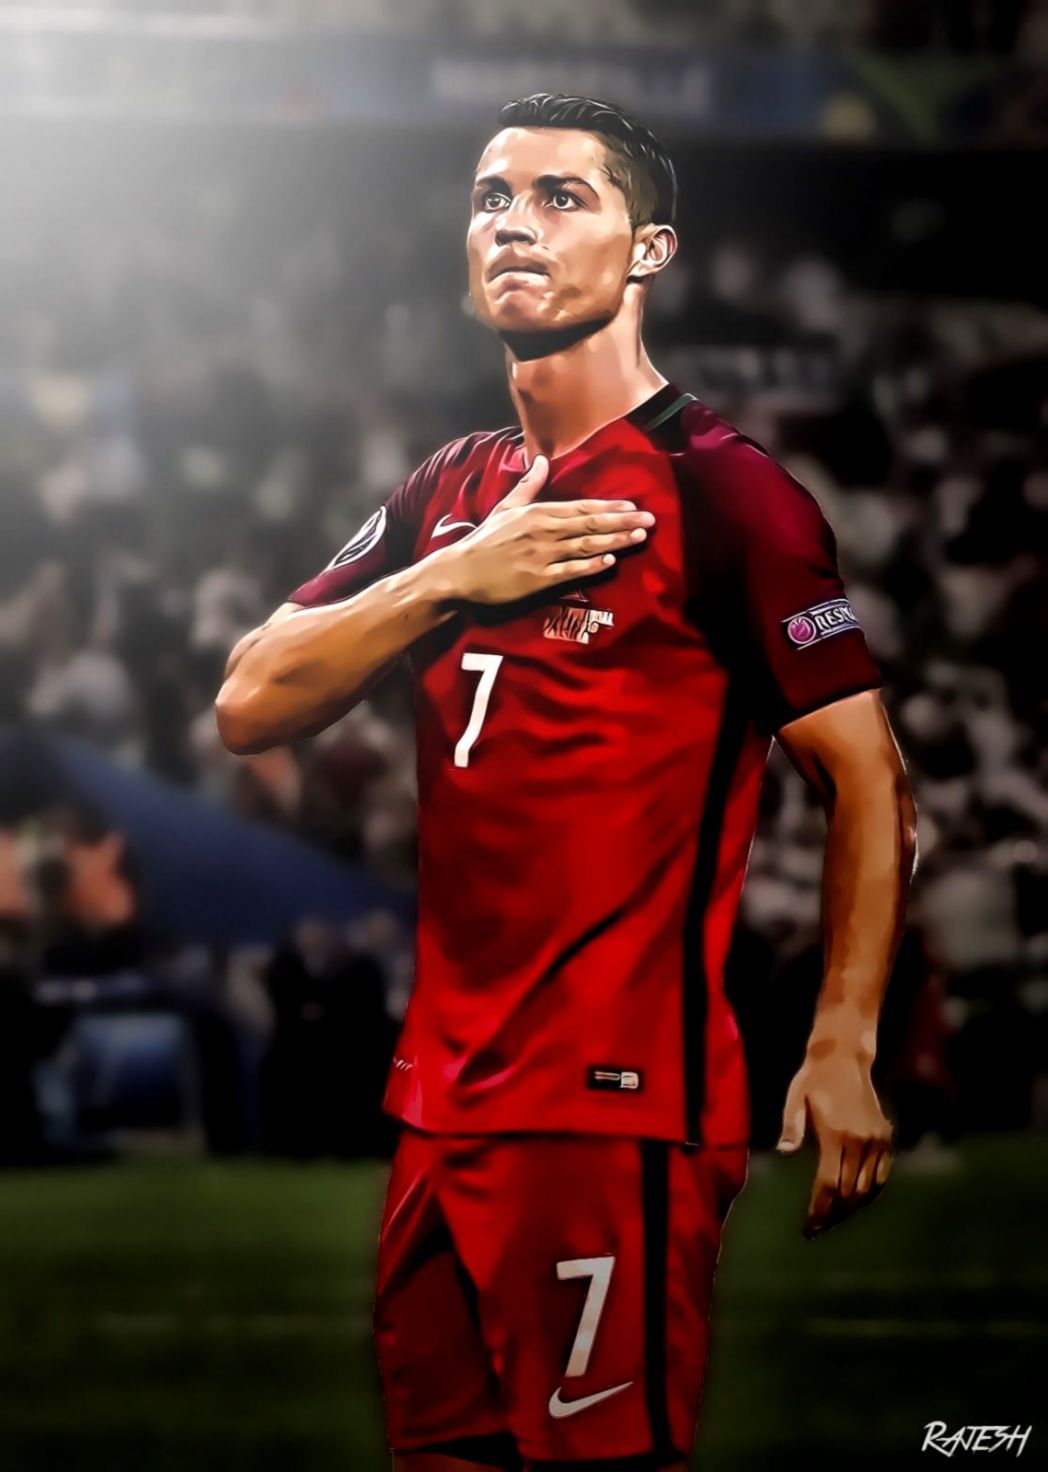 Cristiano Ronaldo Portugal 2018 Wallpapers